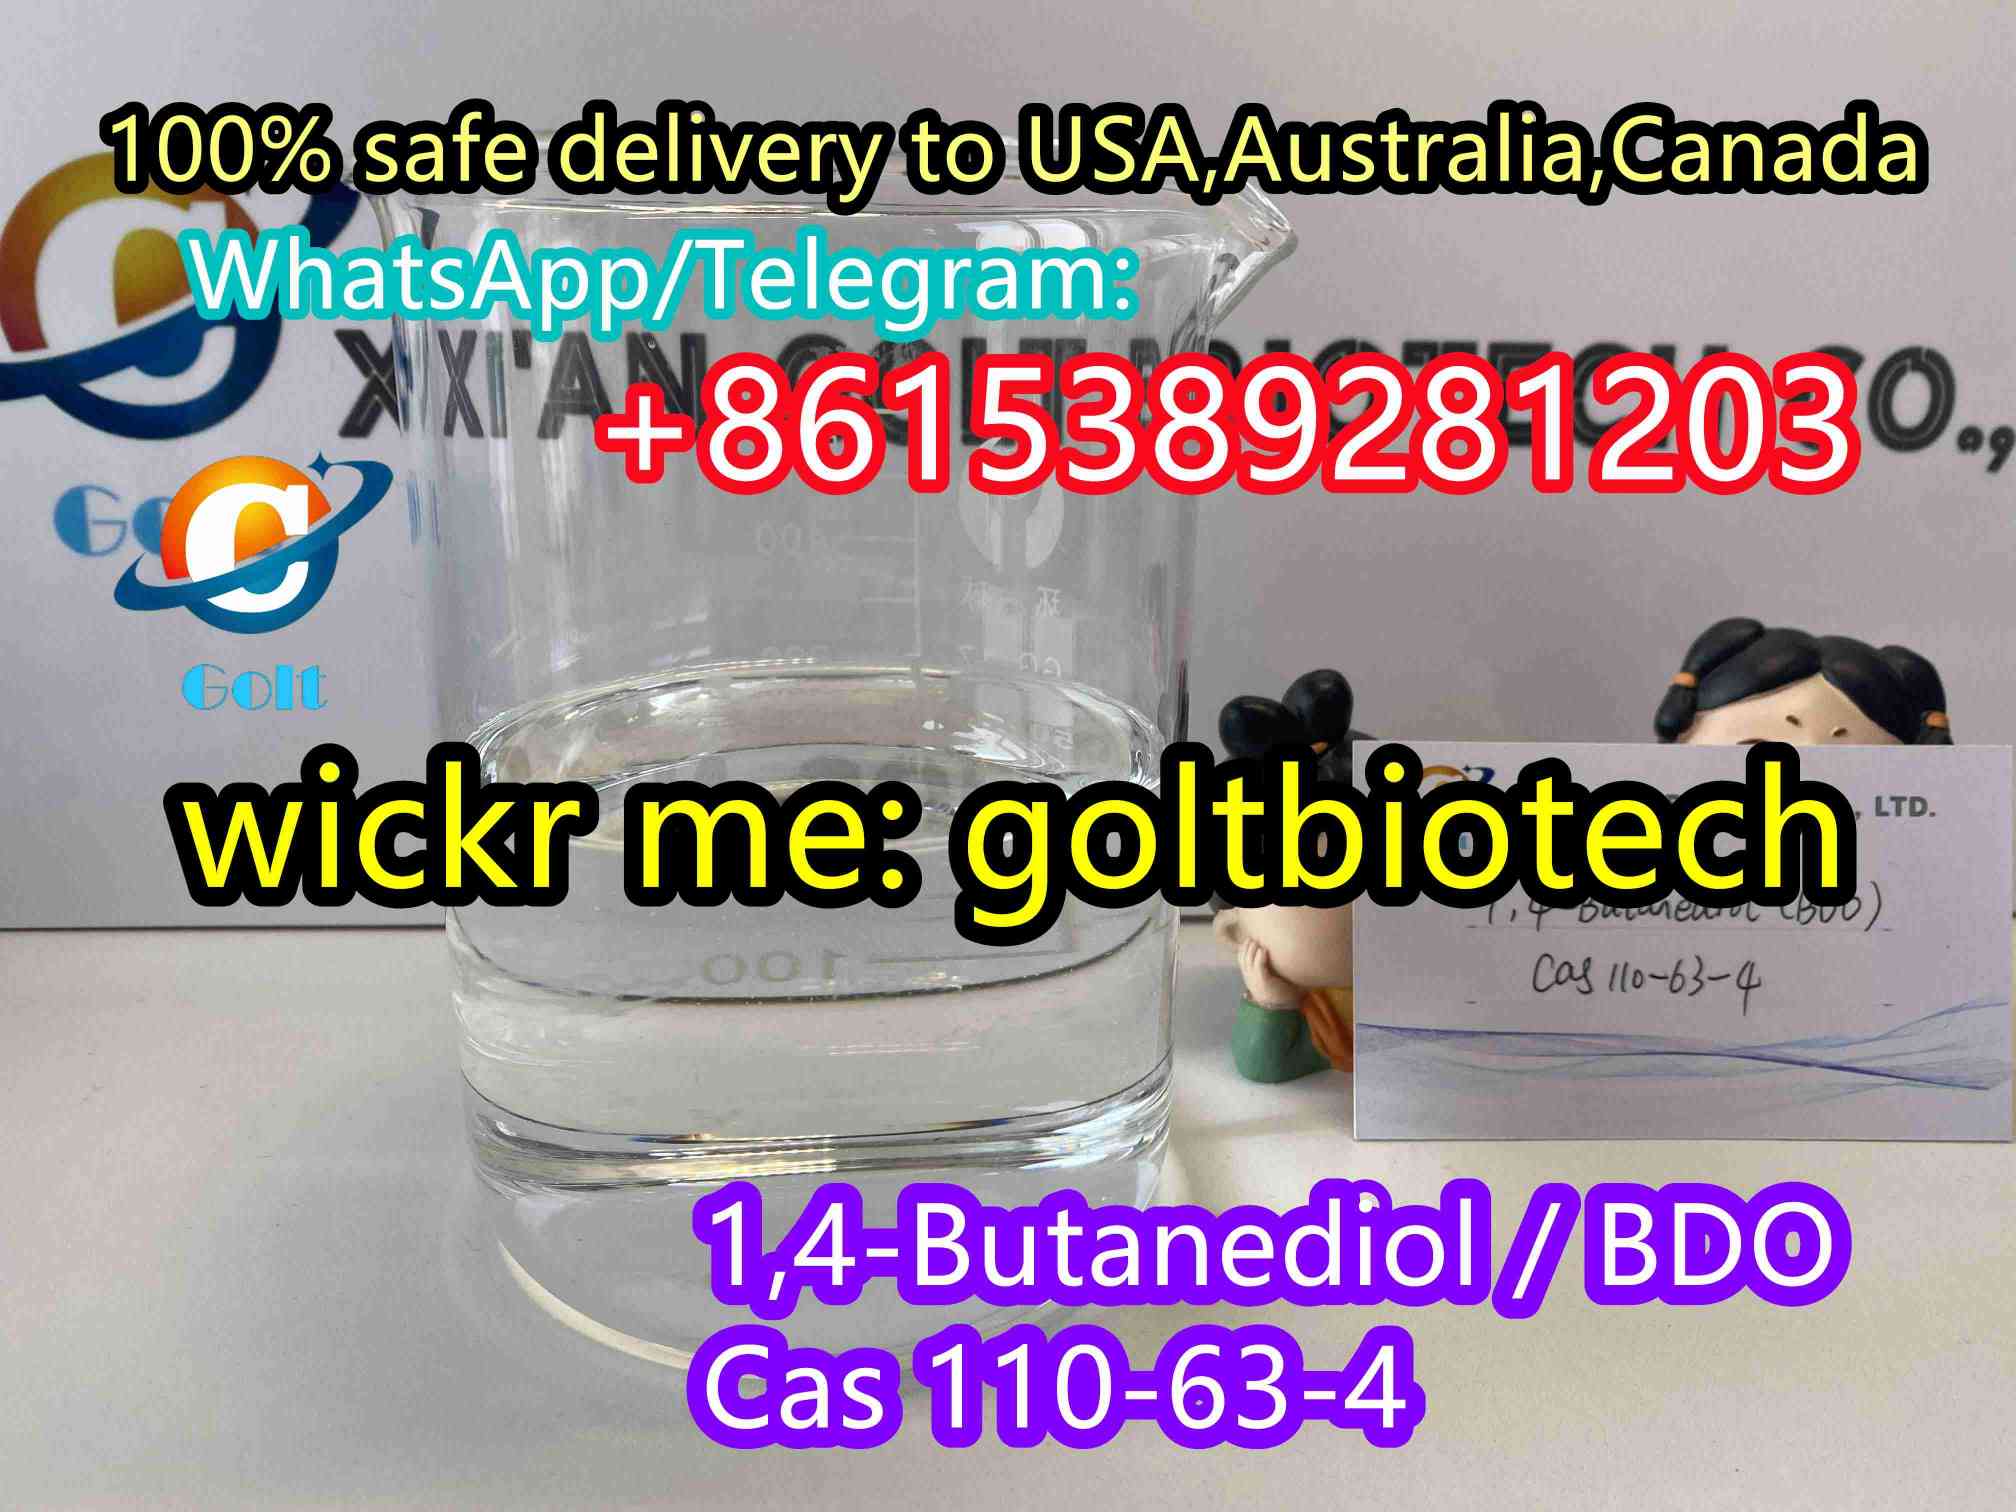 1,4-Butanediol BD BDO liquid fantasy 1,4 BDO for sale one comma four Butanediol to USA,Australia, Canada Wickr me:goltbiotech